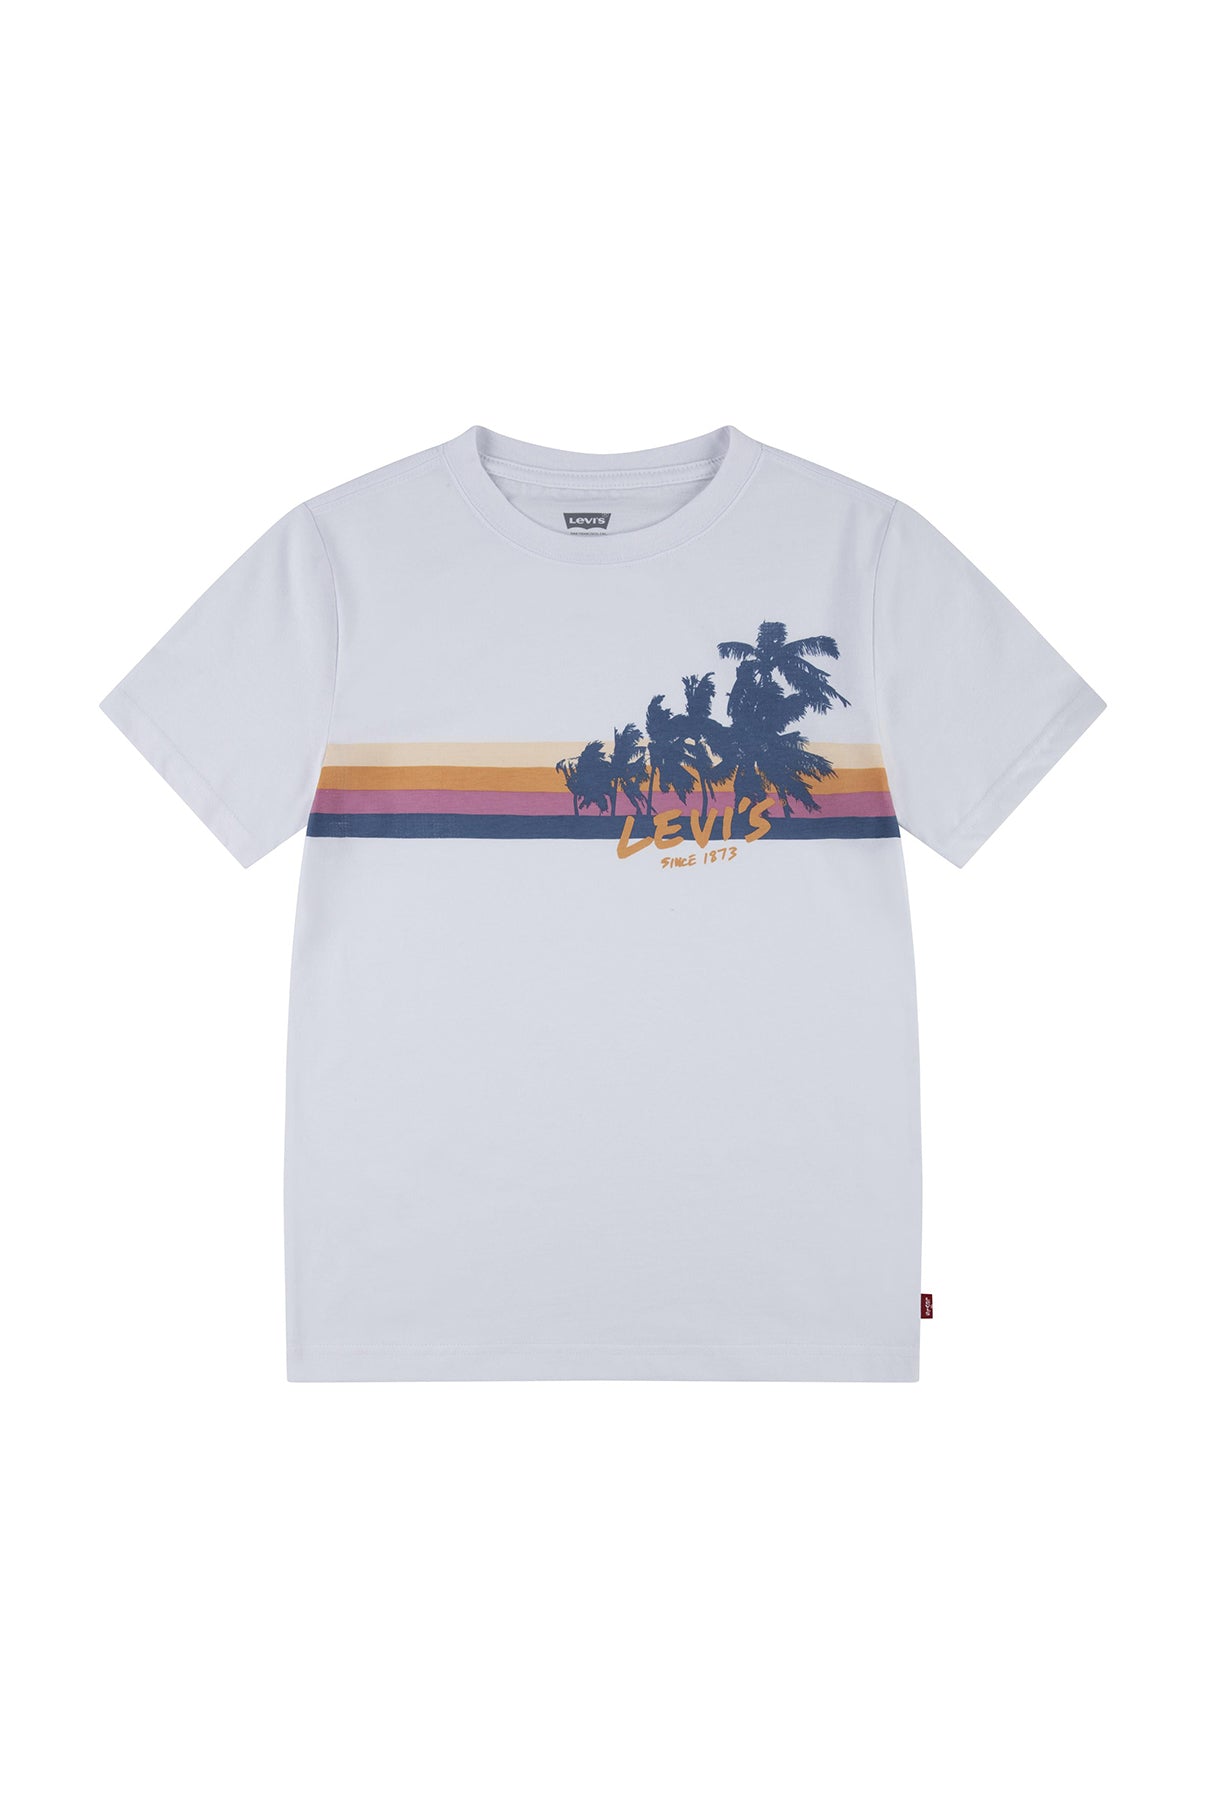 LEVIS BOY T-shirt Palm Silhouette